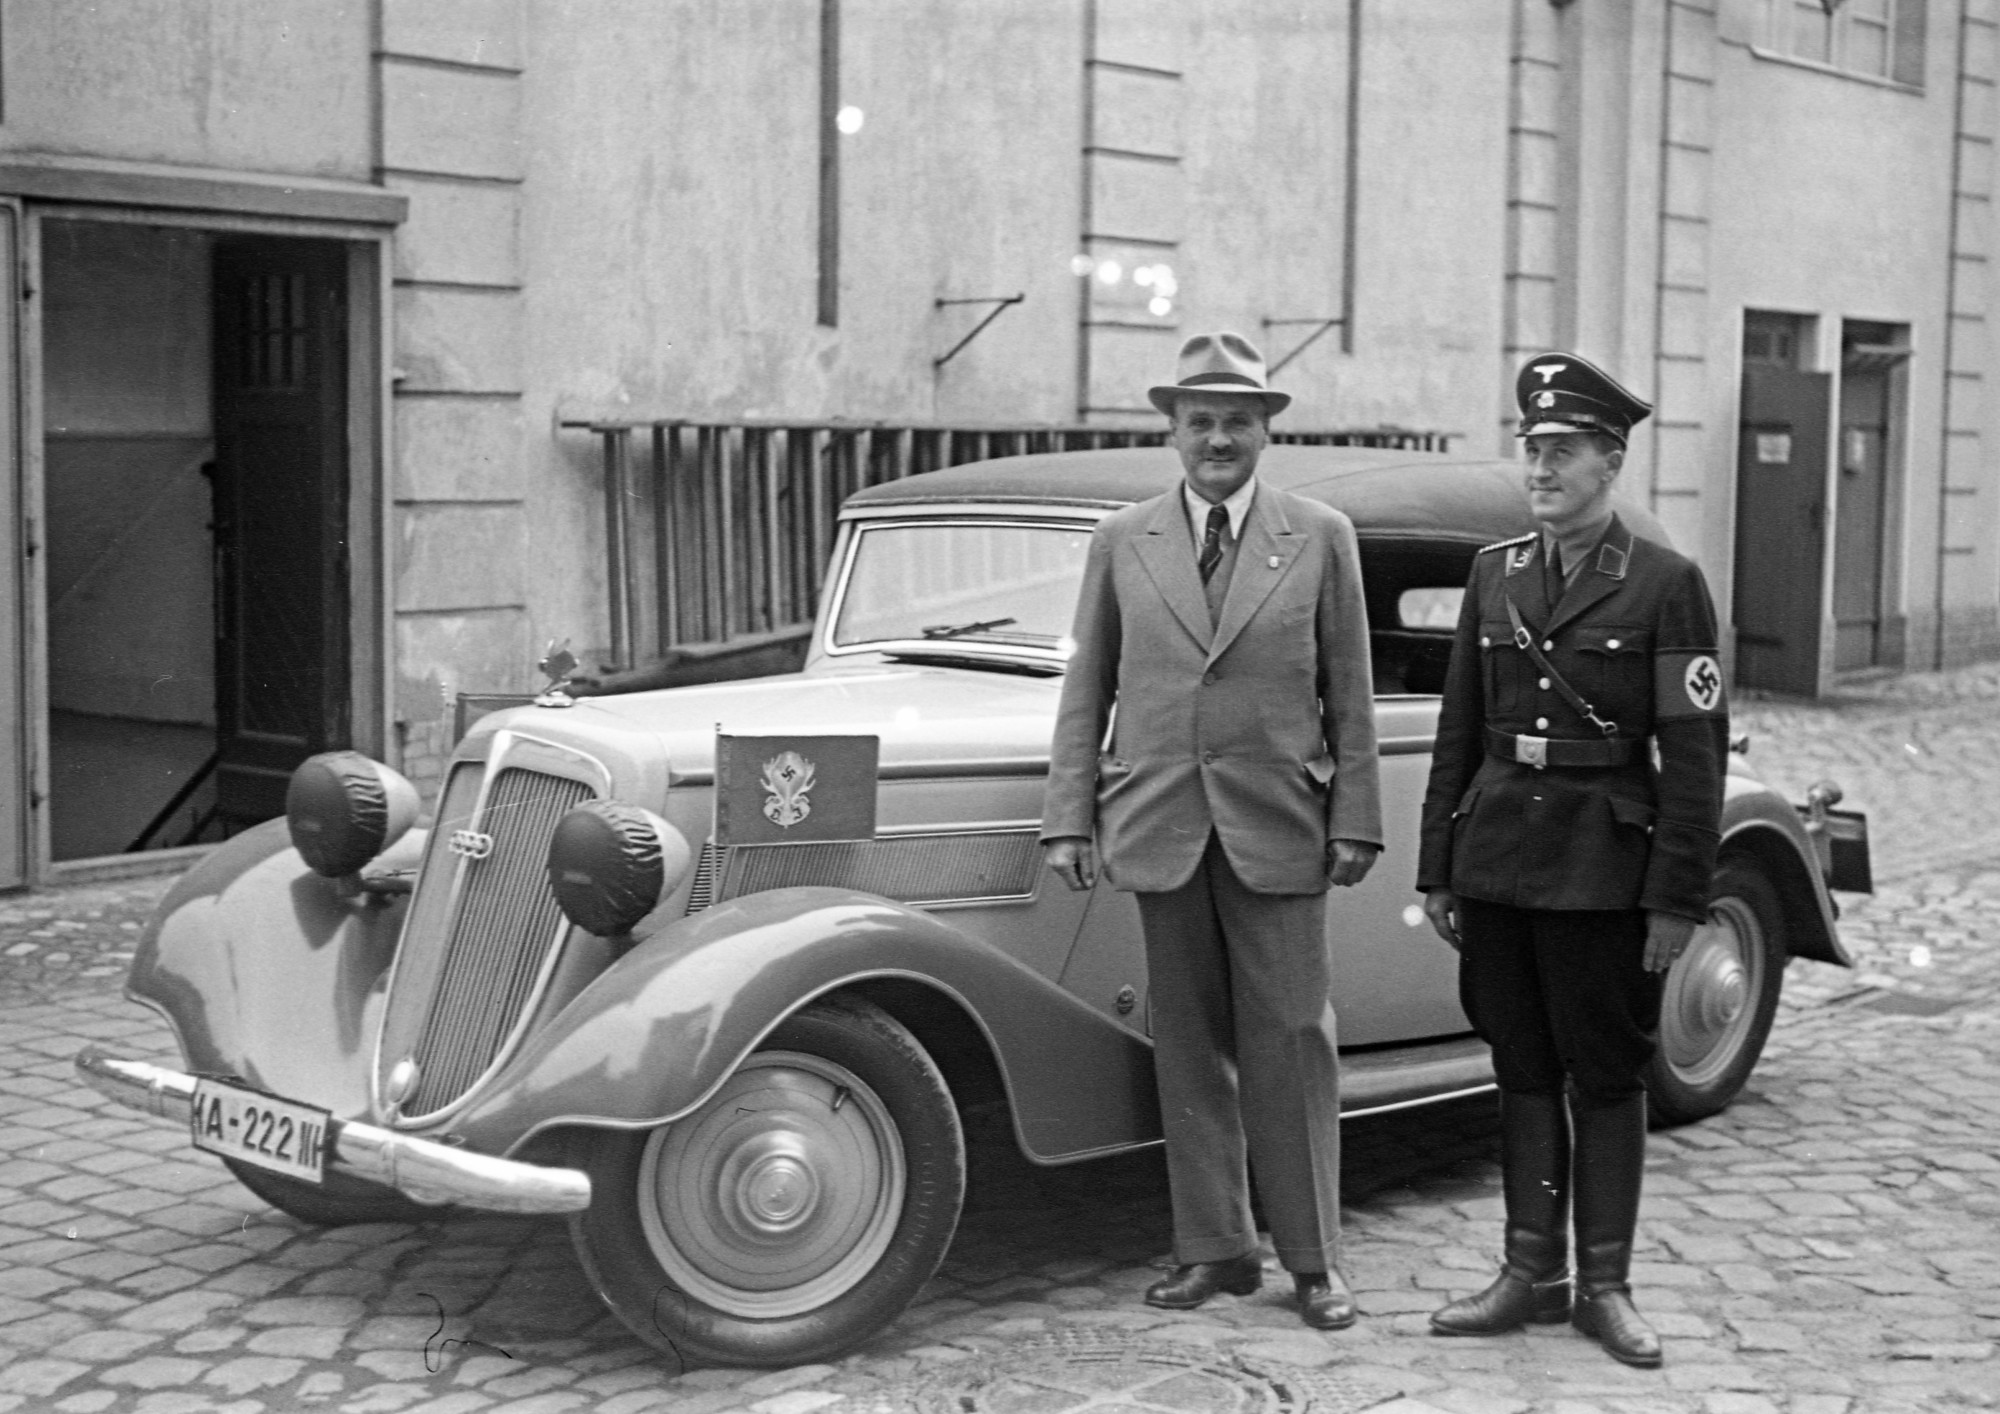 Schwarz-weiß Foto: Mann in Anzug und Hut (li.) sowie Mann in nationalsozialistischer Uniform (re.) stehen lächelnd vor einem geparkten Auto.